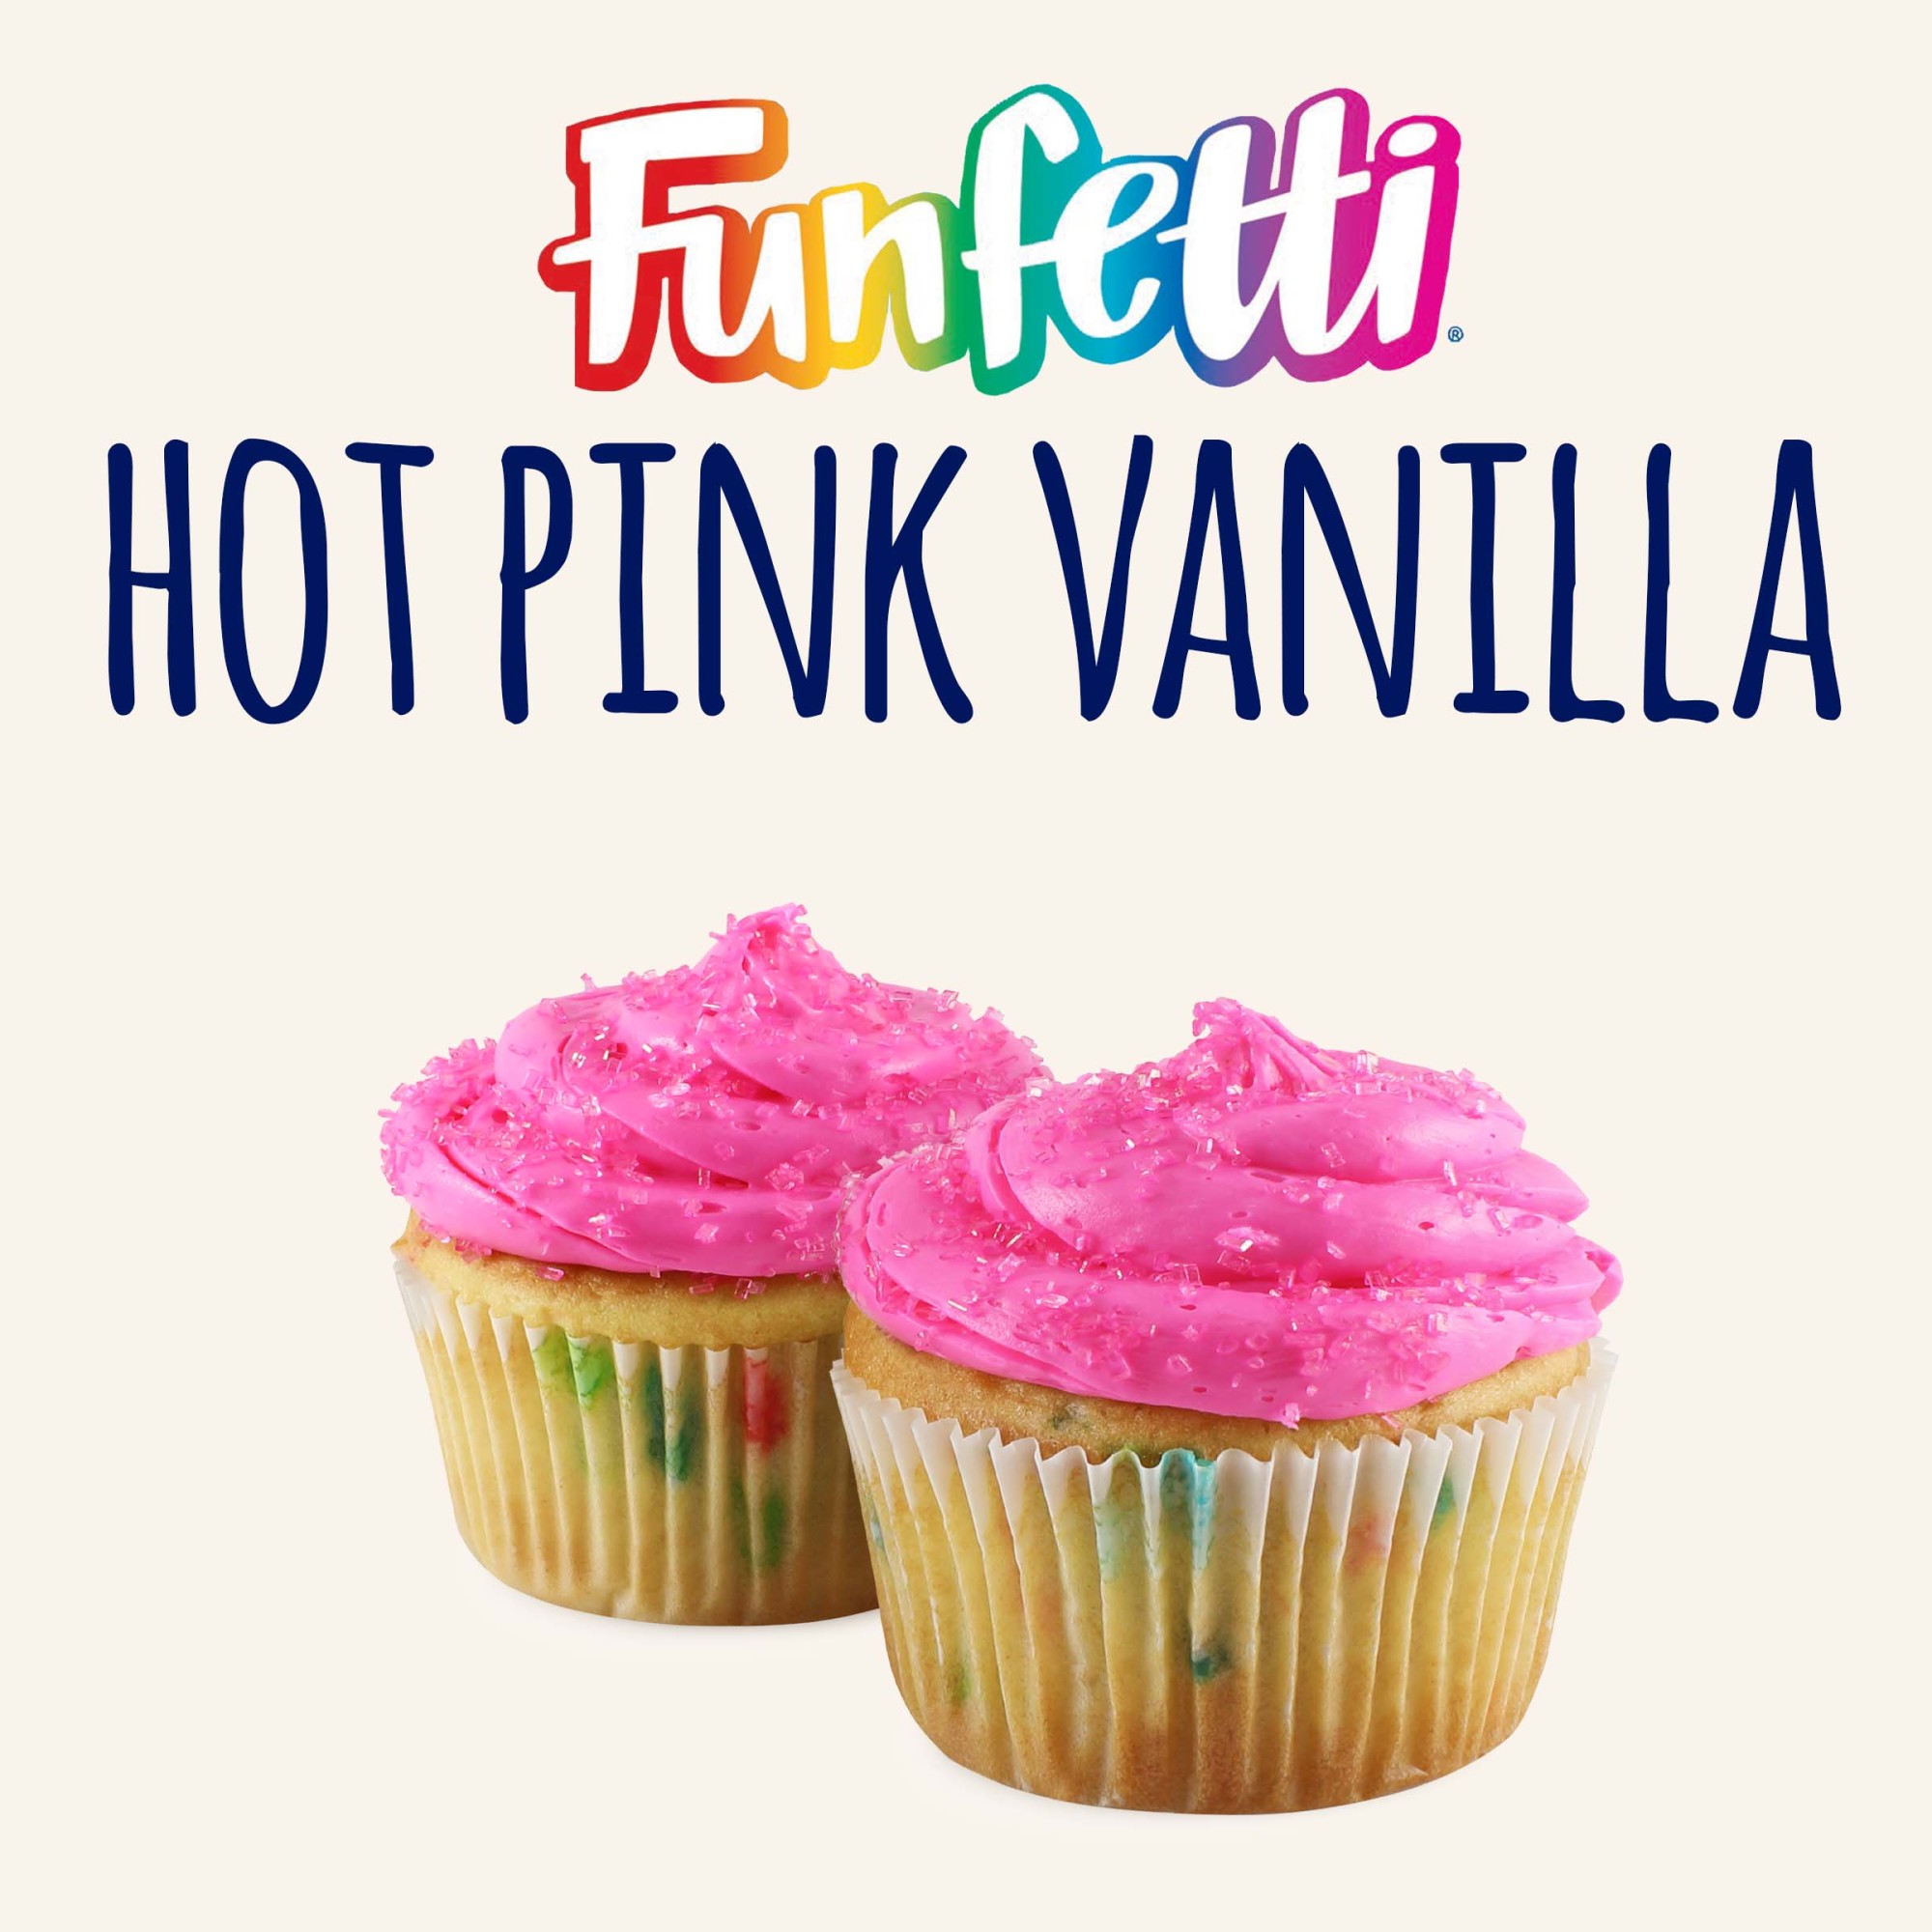 Pillsbury Funfetti Hot Pink Vanilla Frosting, 15.6 Oz Tub - image 3 of 7